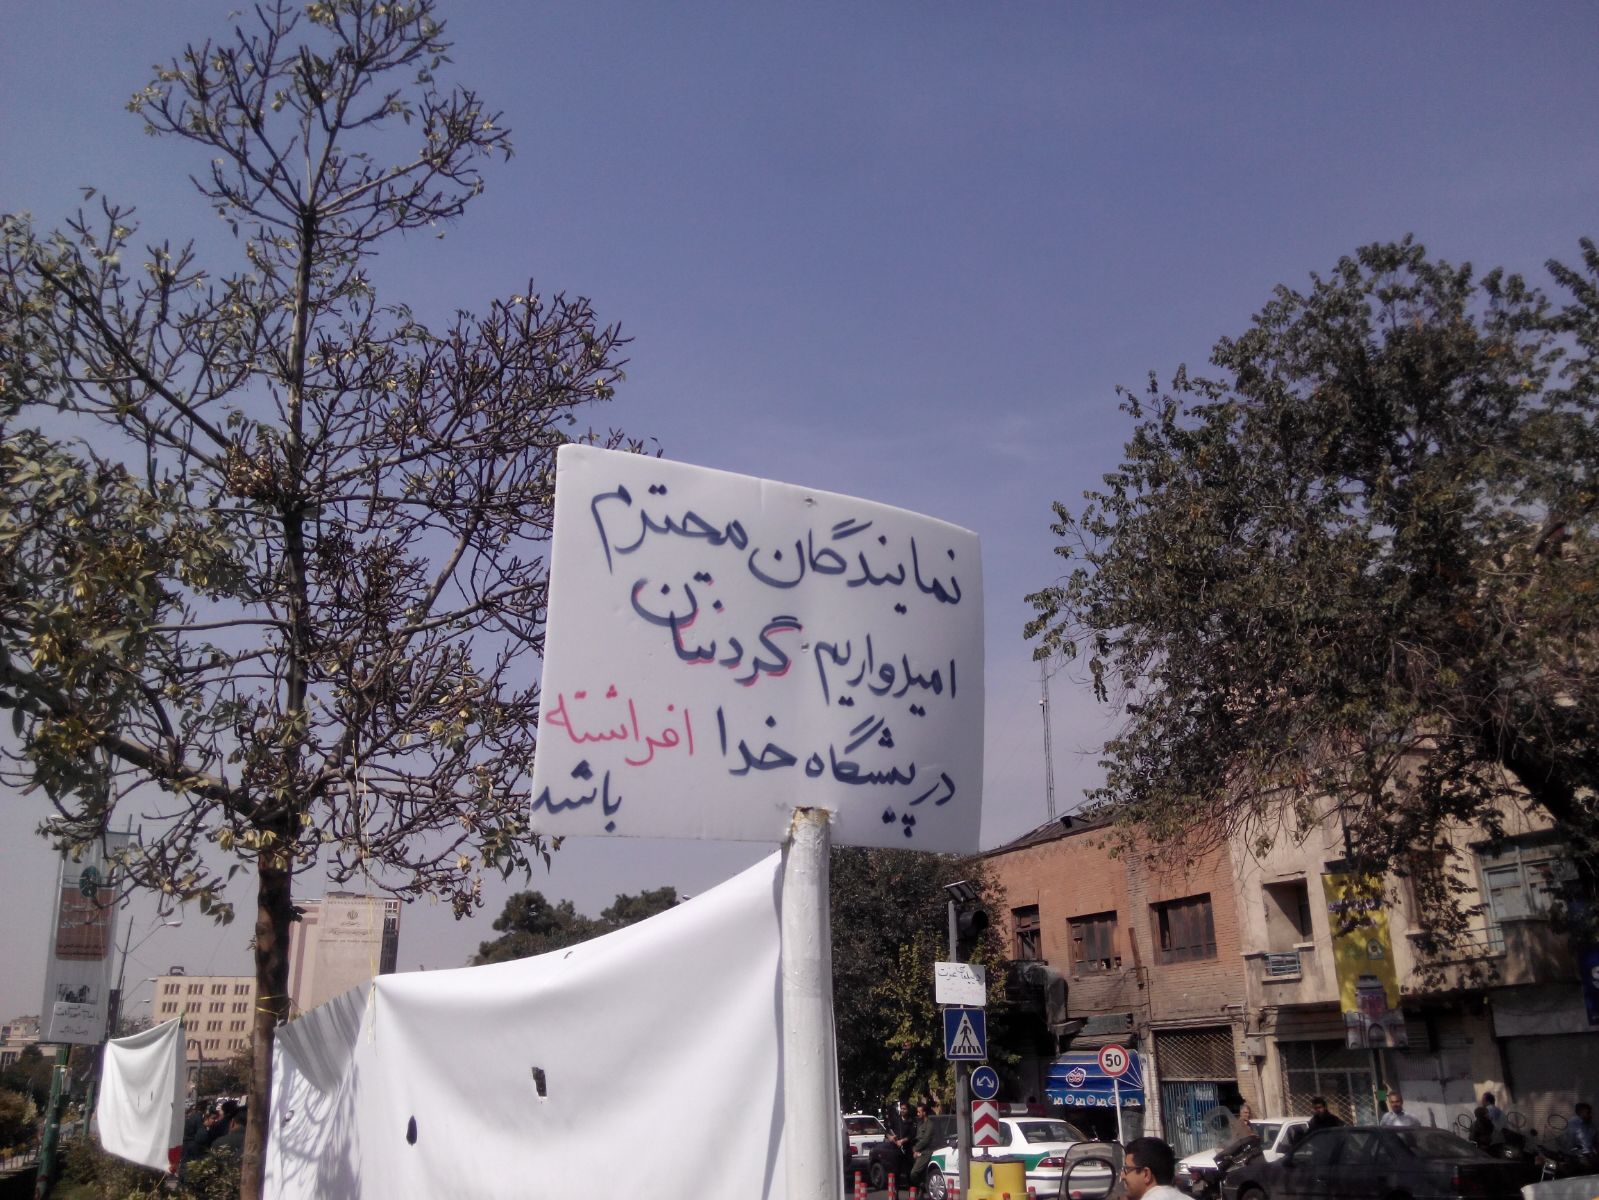 تصاویر اختصاصی «حافظ نیوز» از تحصن «غیرت، رد برجام»